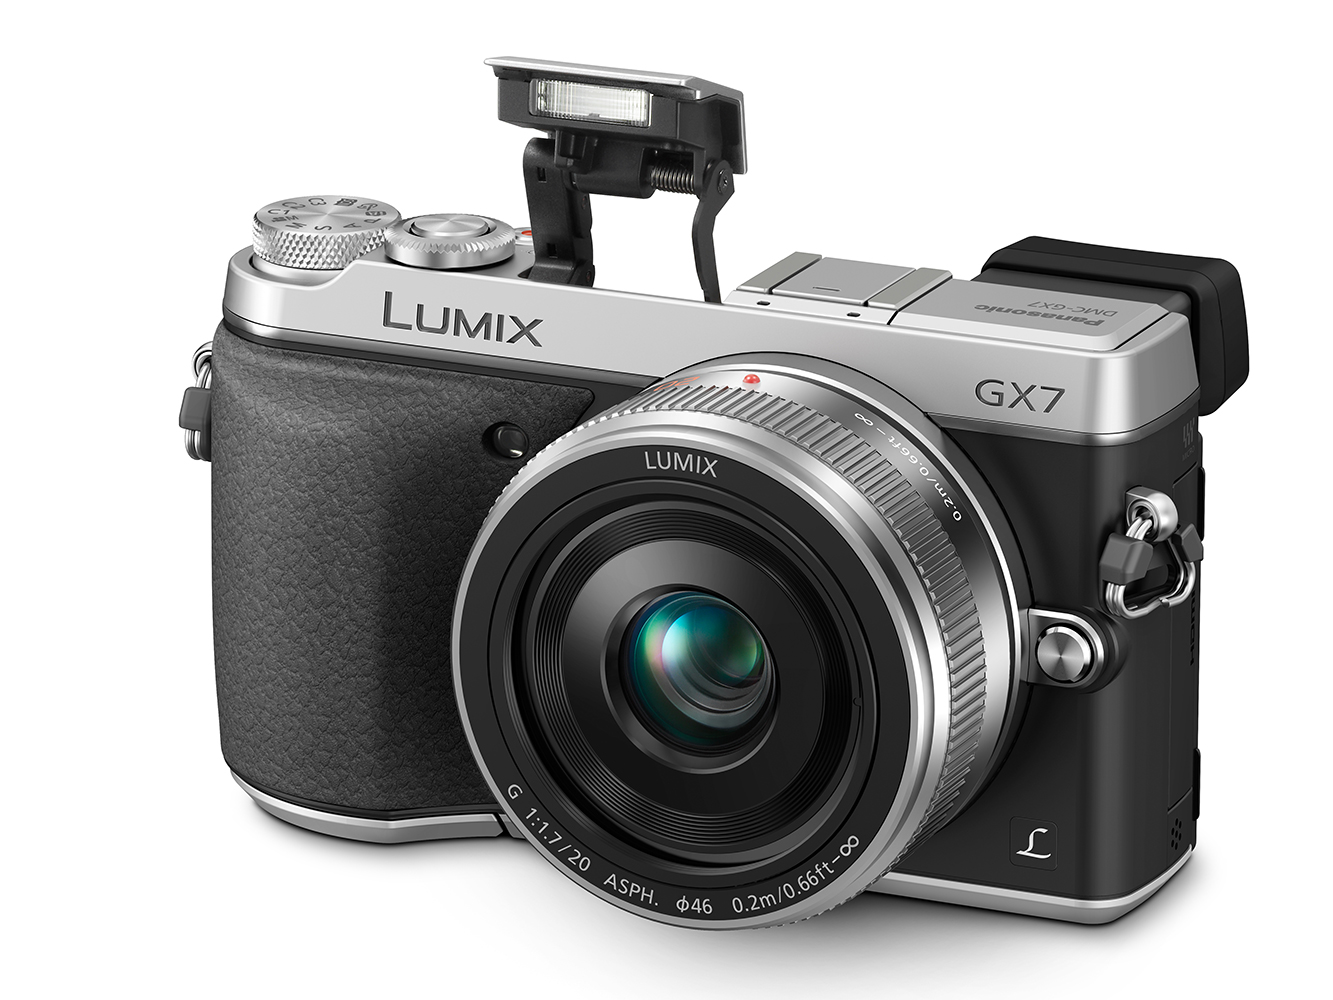 Panasonic Lumix DMC-GX7 là mẫu máy ảnh du lịch giá rẻ có kích thước nhỏ gọn, được bổ sung thêm kính ngắm điện tử